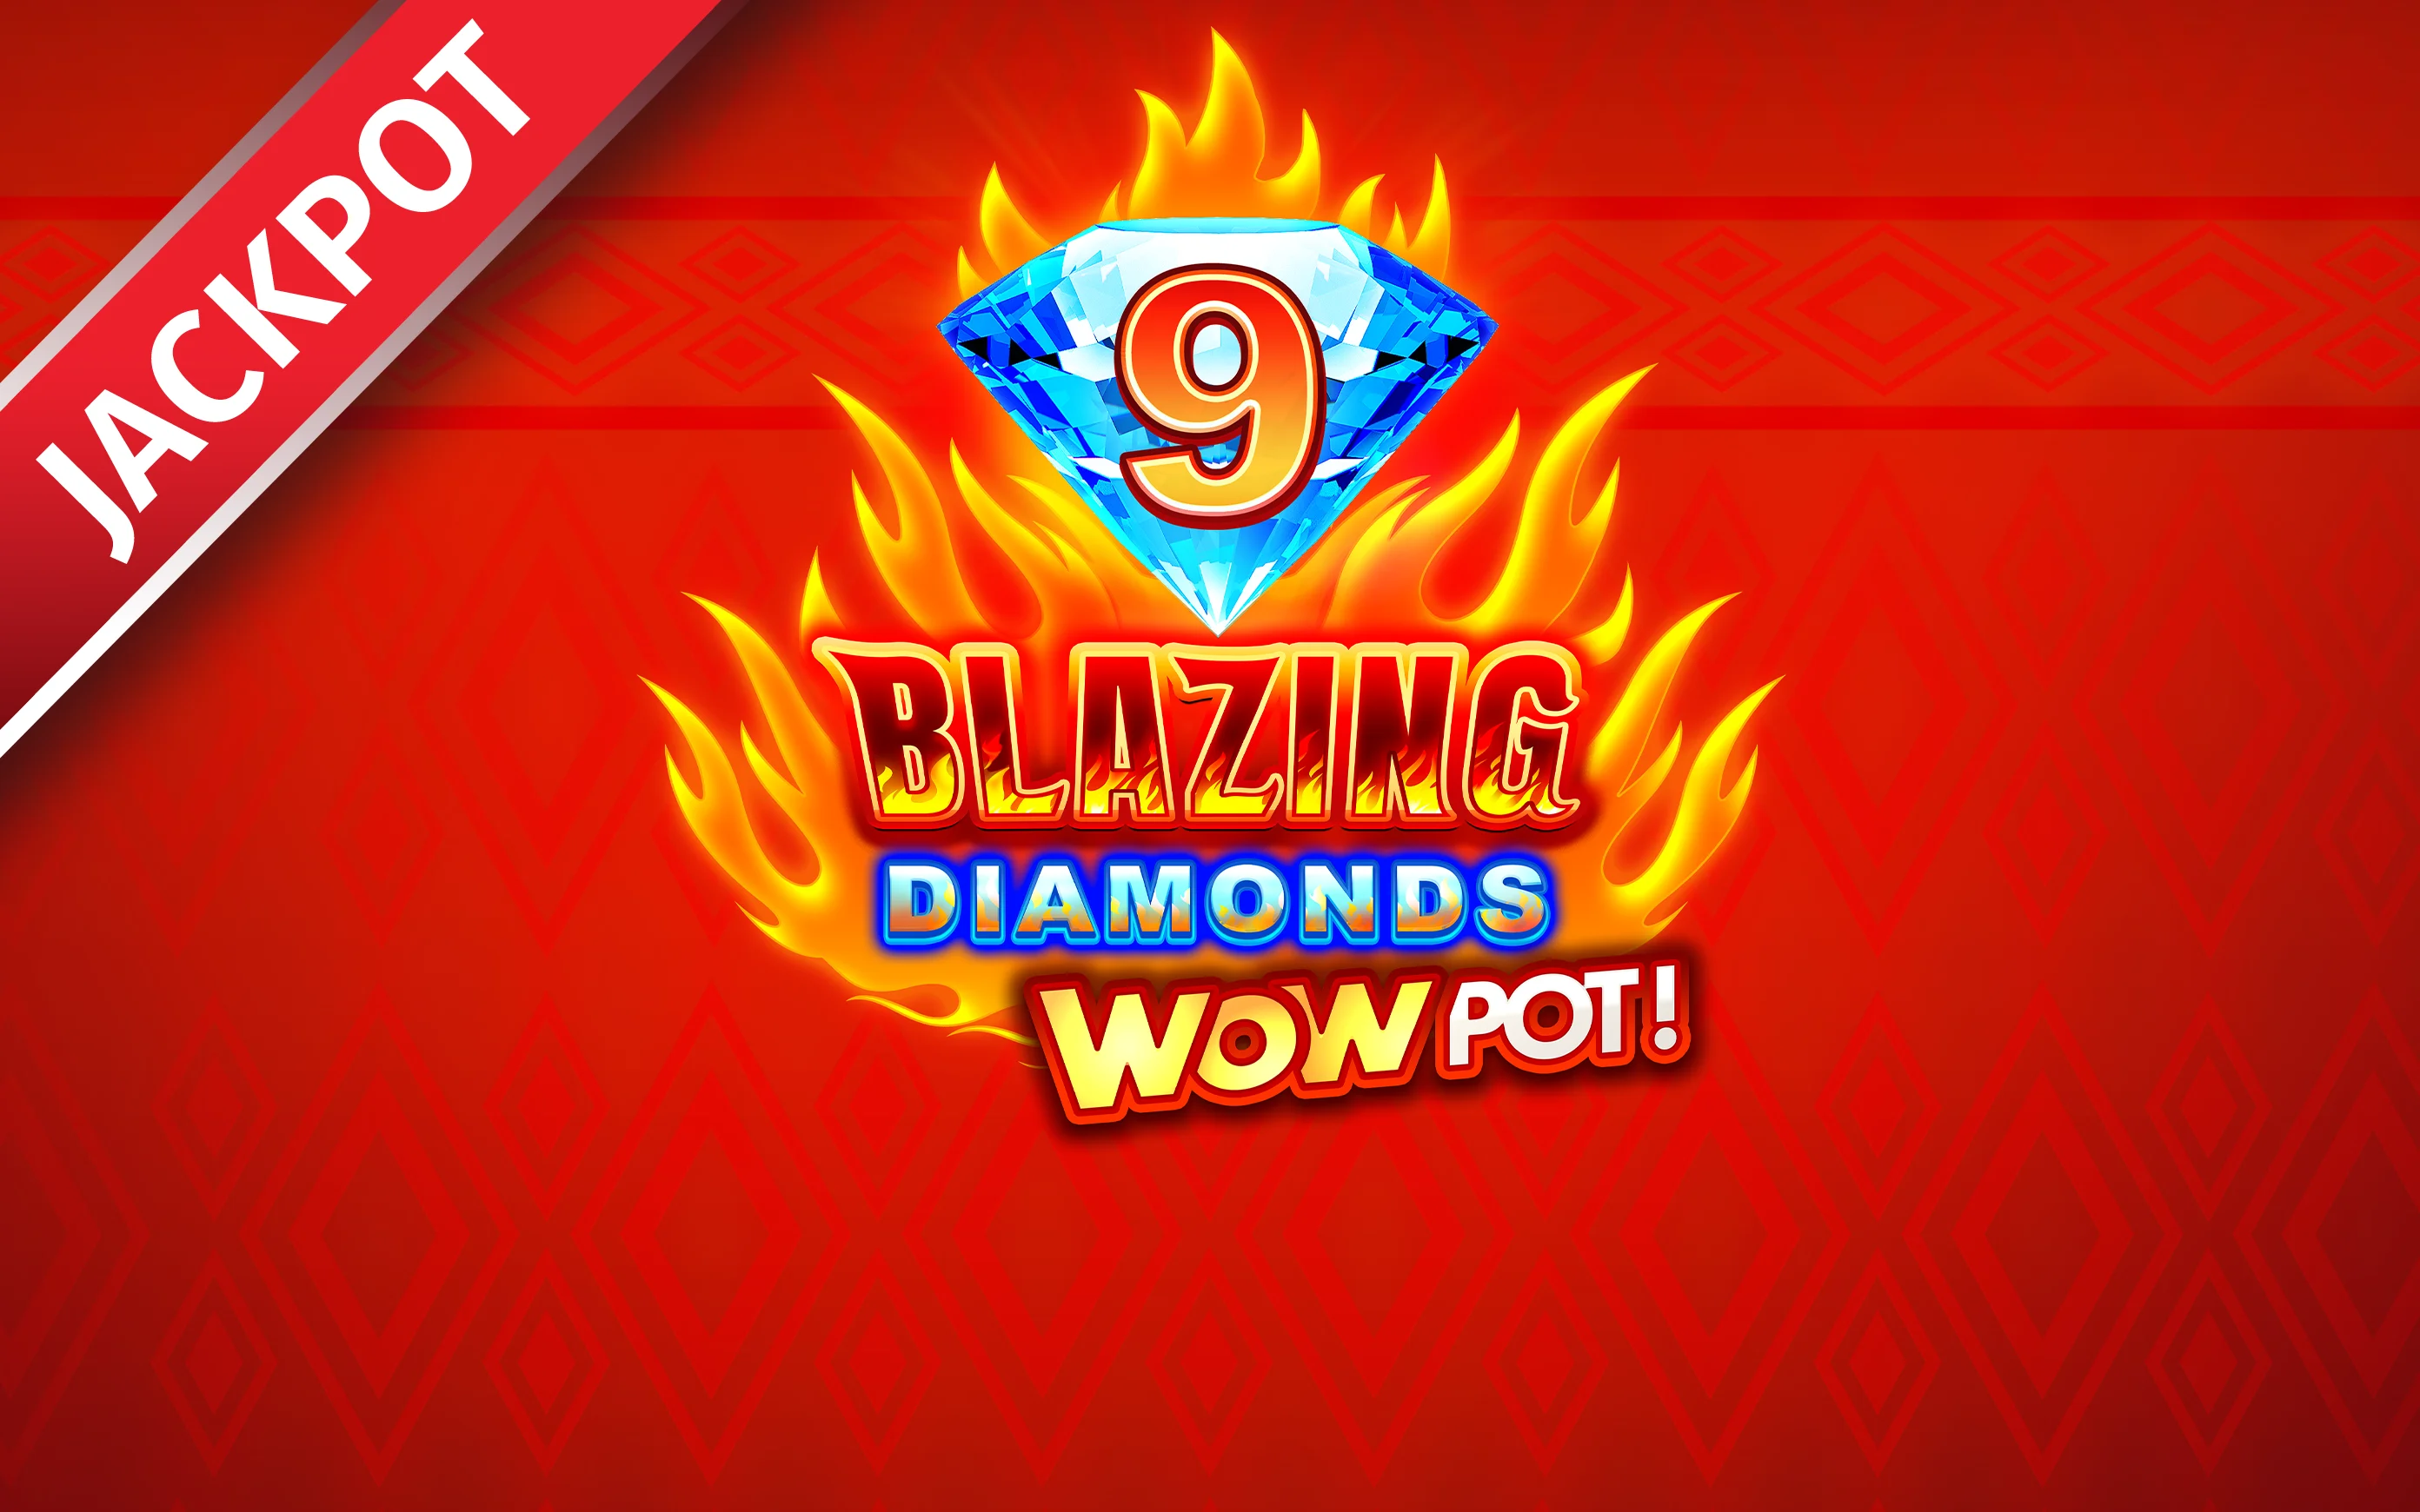 Spielen Sie 9 Blazing Diamonds WOWPOT auf Starcasino.be-Online-Casino